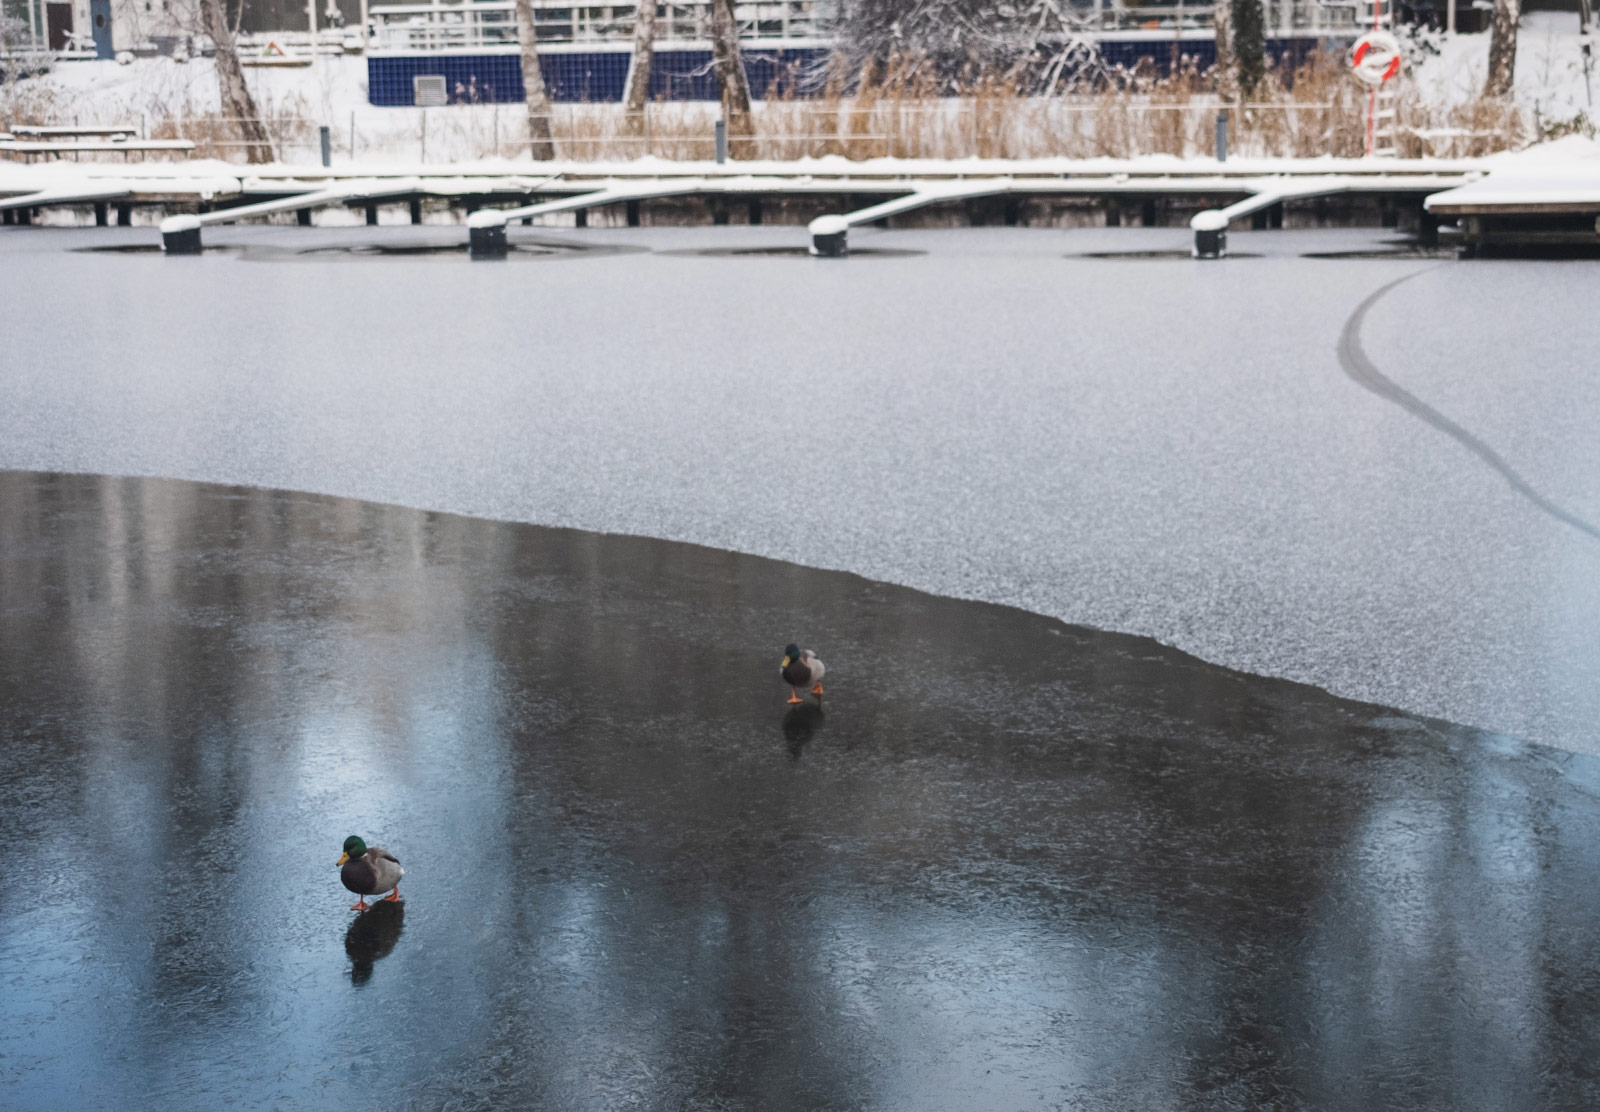 Ducks walking on frozen water